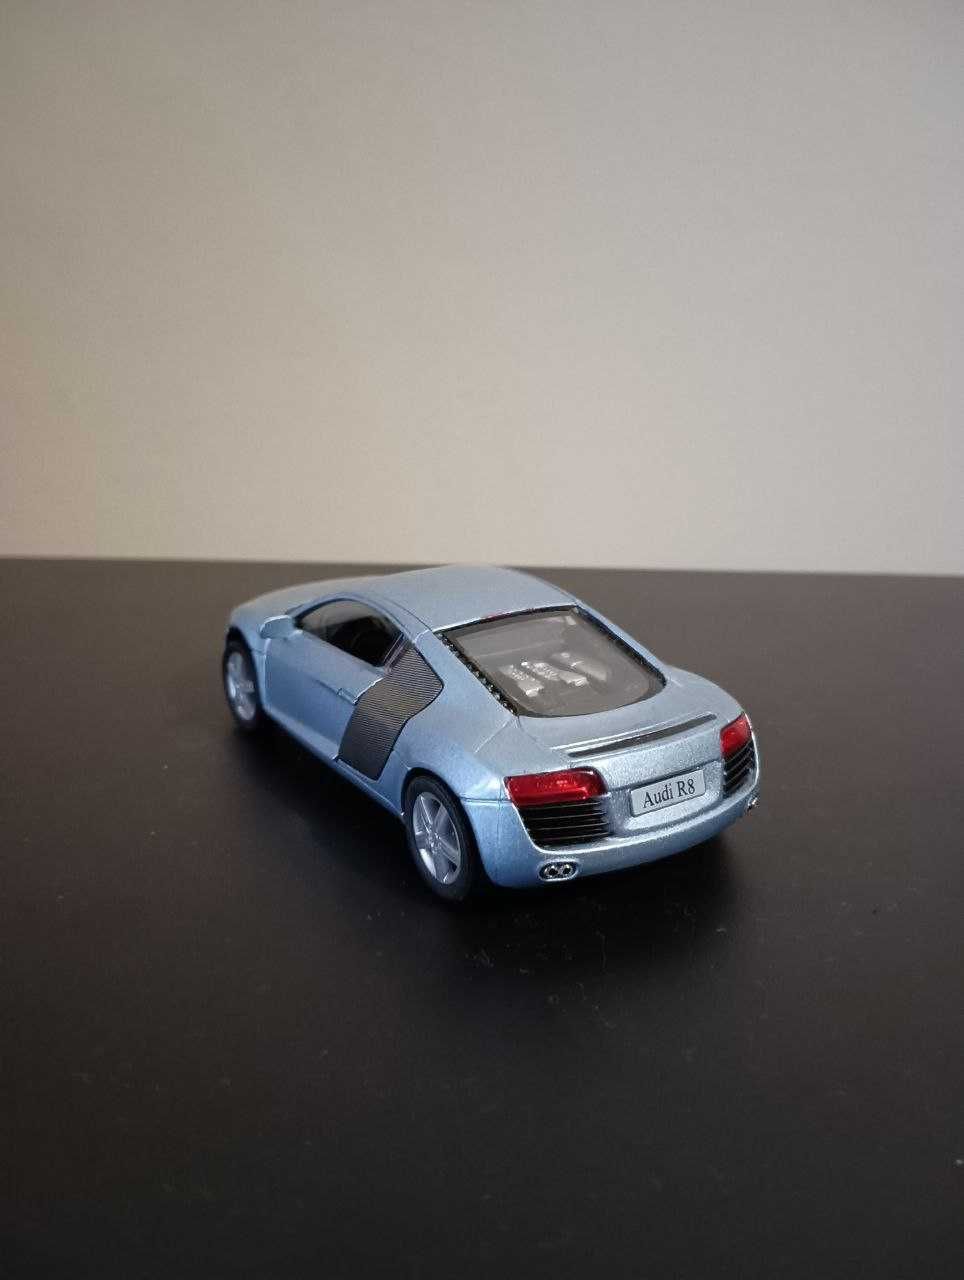 Audi R8 kinsmart, 1:36